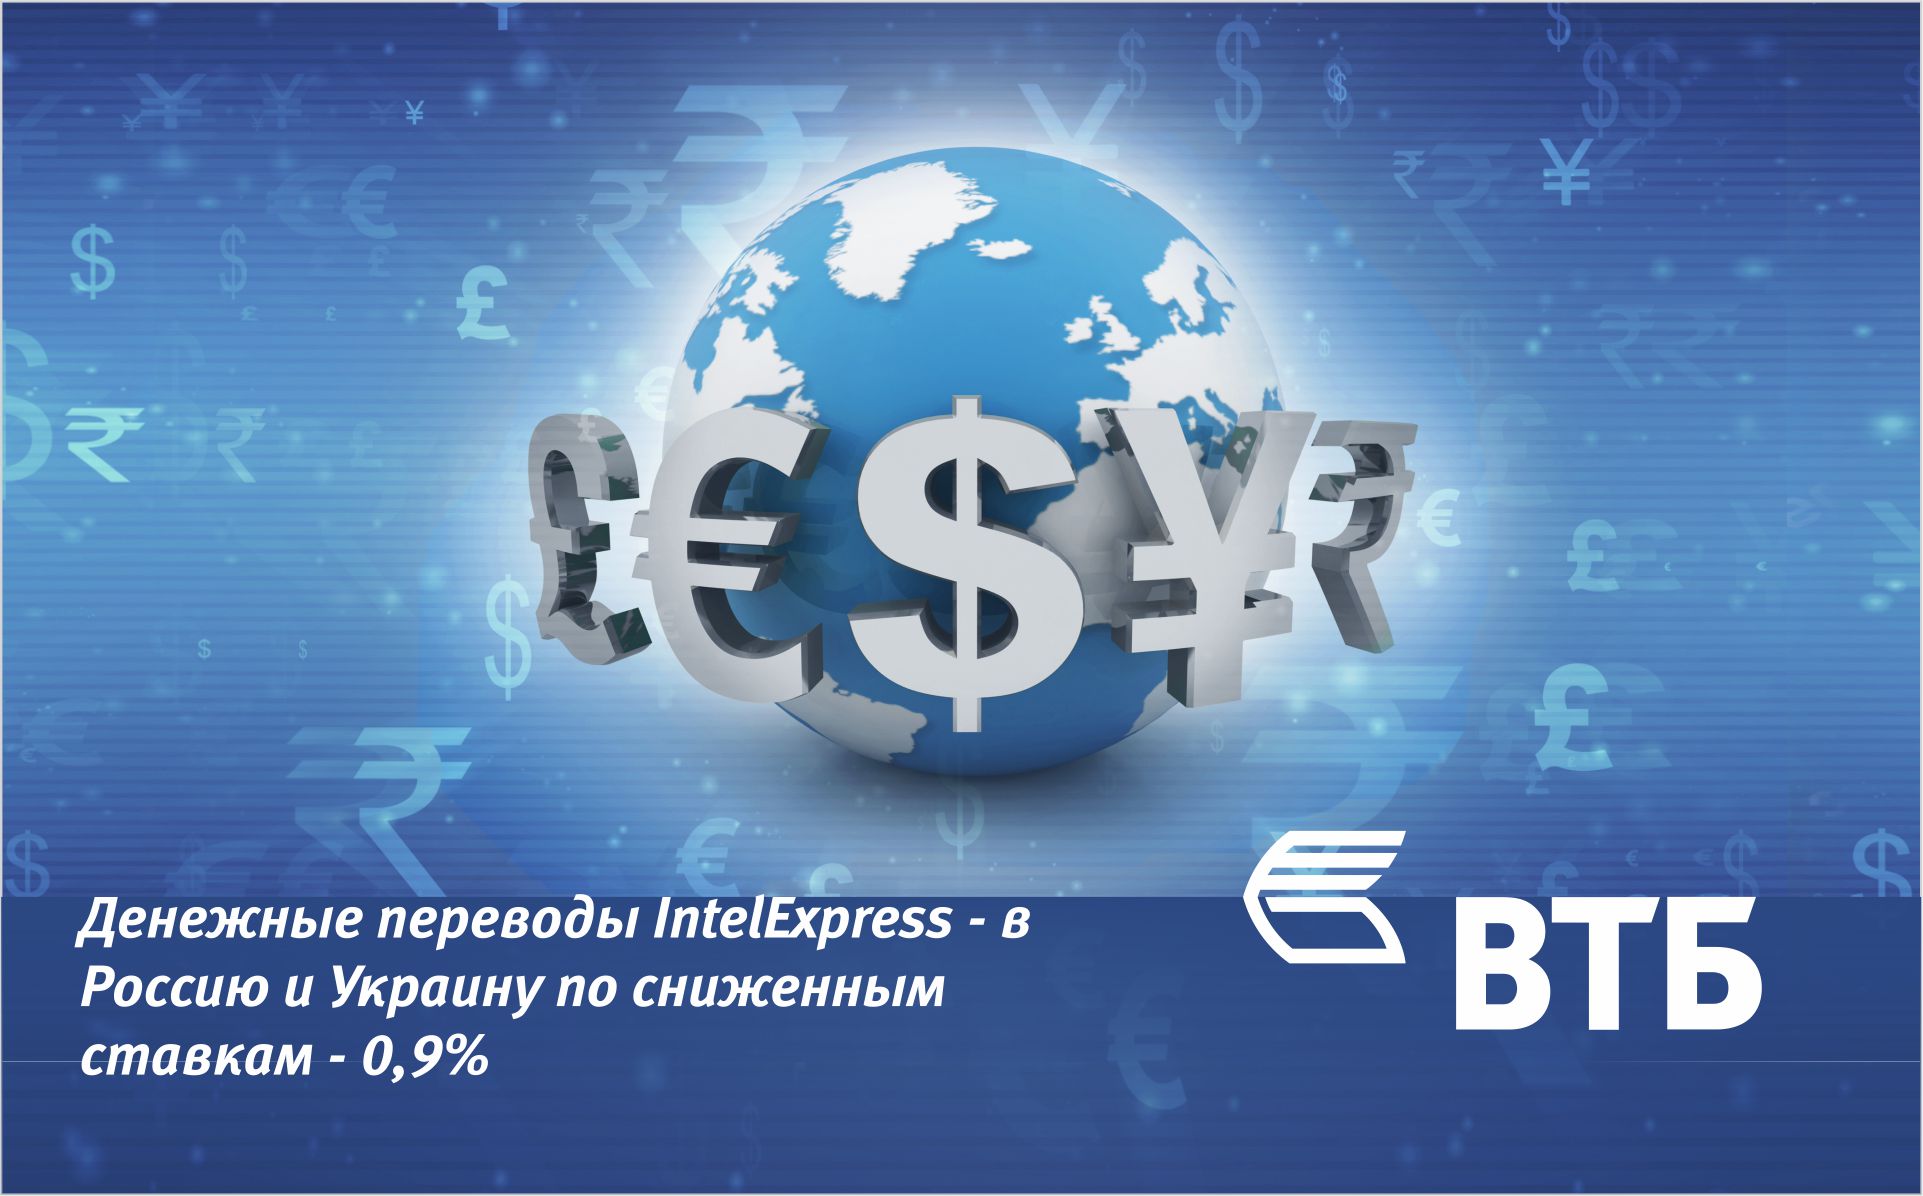 Банк ВТБ (Армения) совместно с системой денежных переводов IntelExpress объявляет акцию